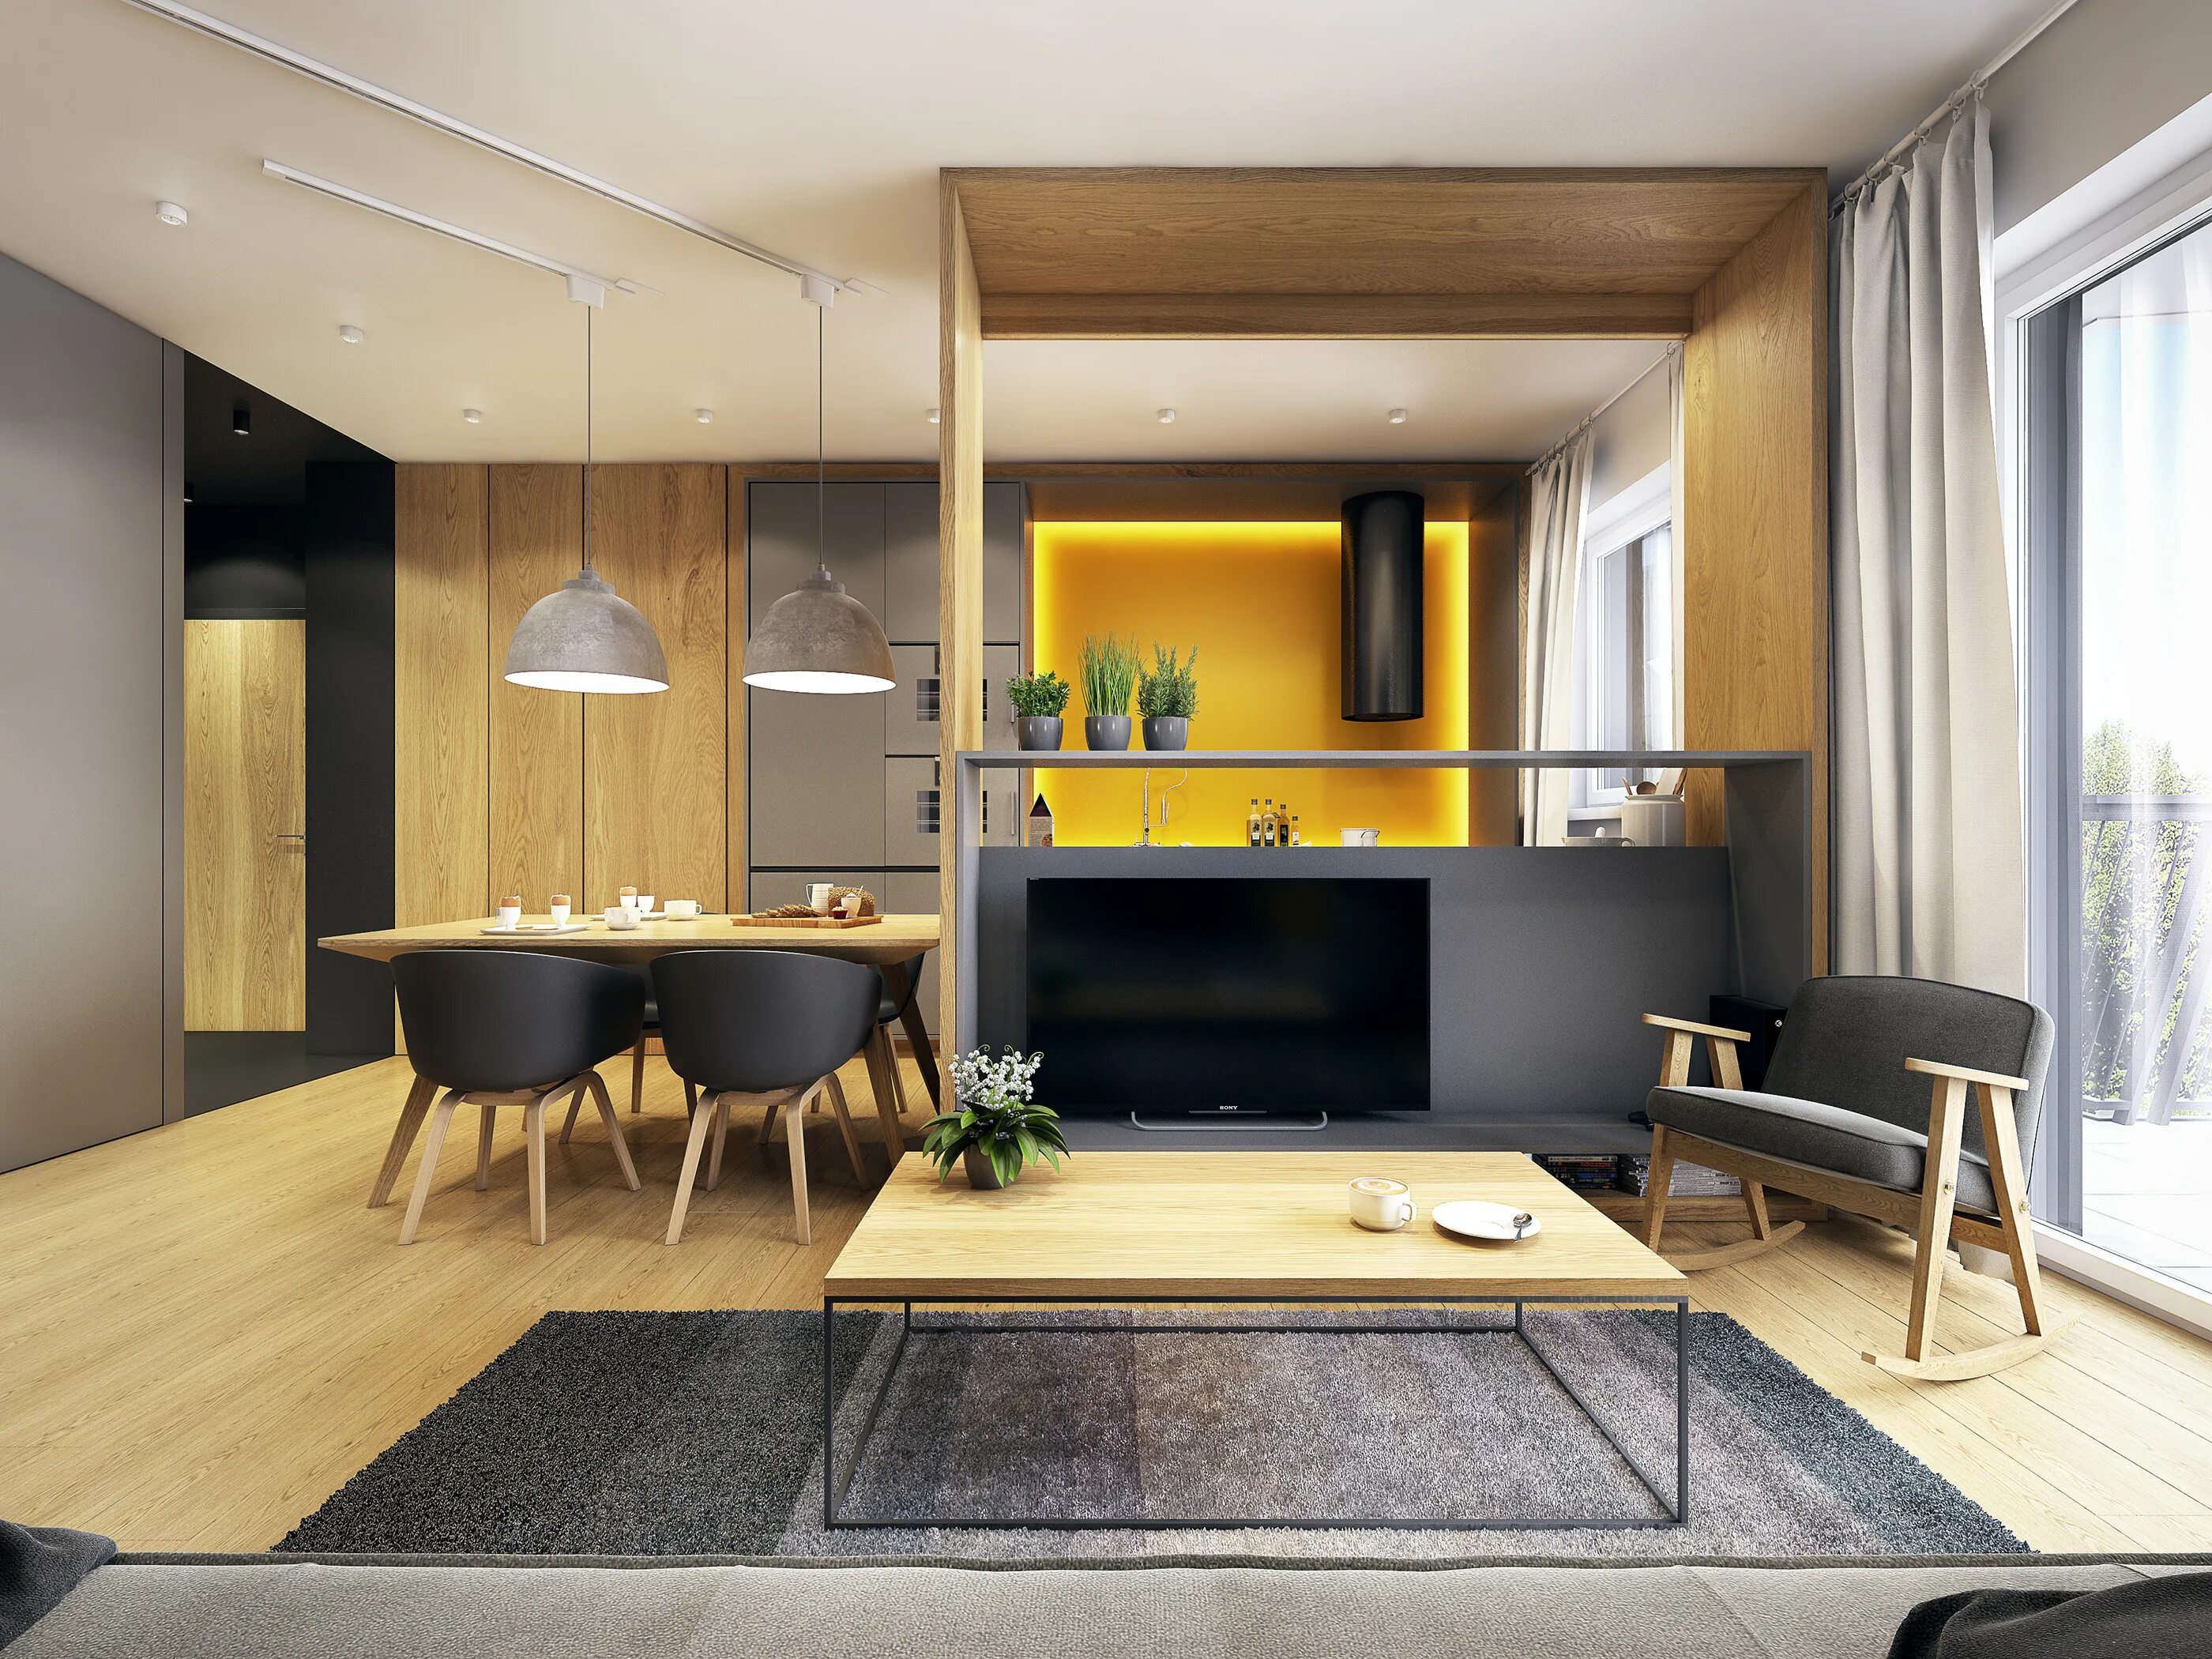 Современная стильная квартира. Стильный интерьер квартиры. Современный стиль в интерьере. Кухня-гостиная в современном стиле. Дизайн студии.